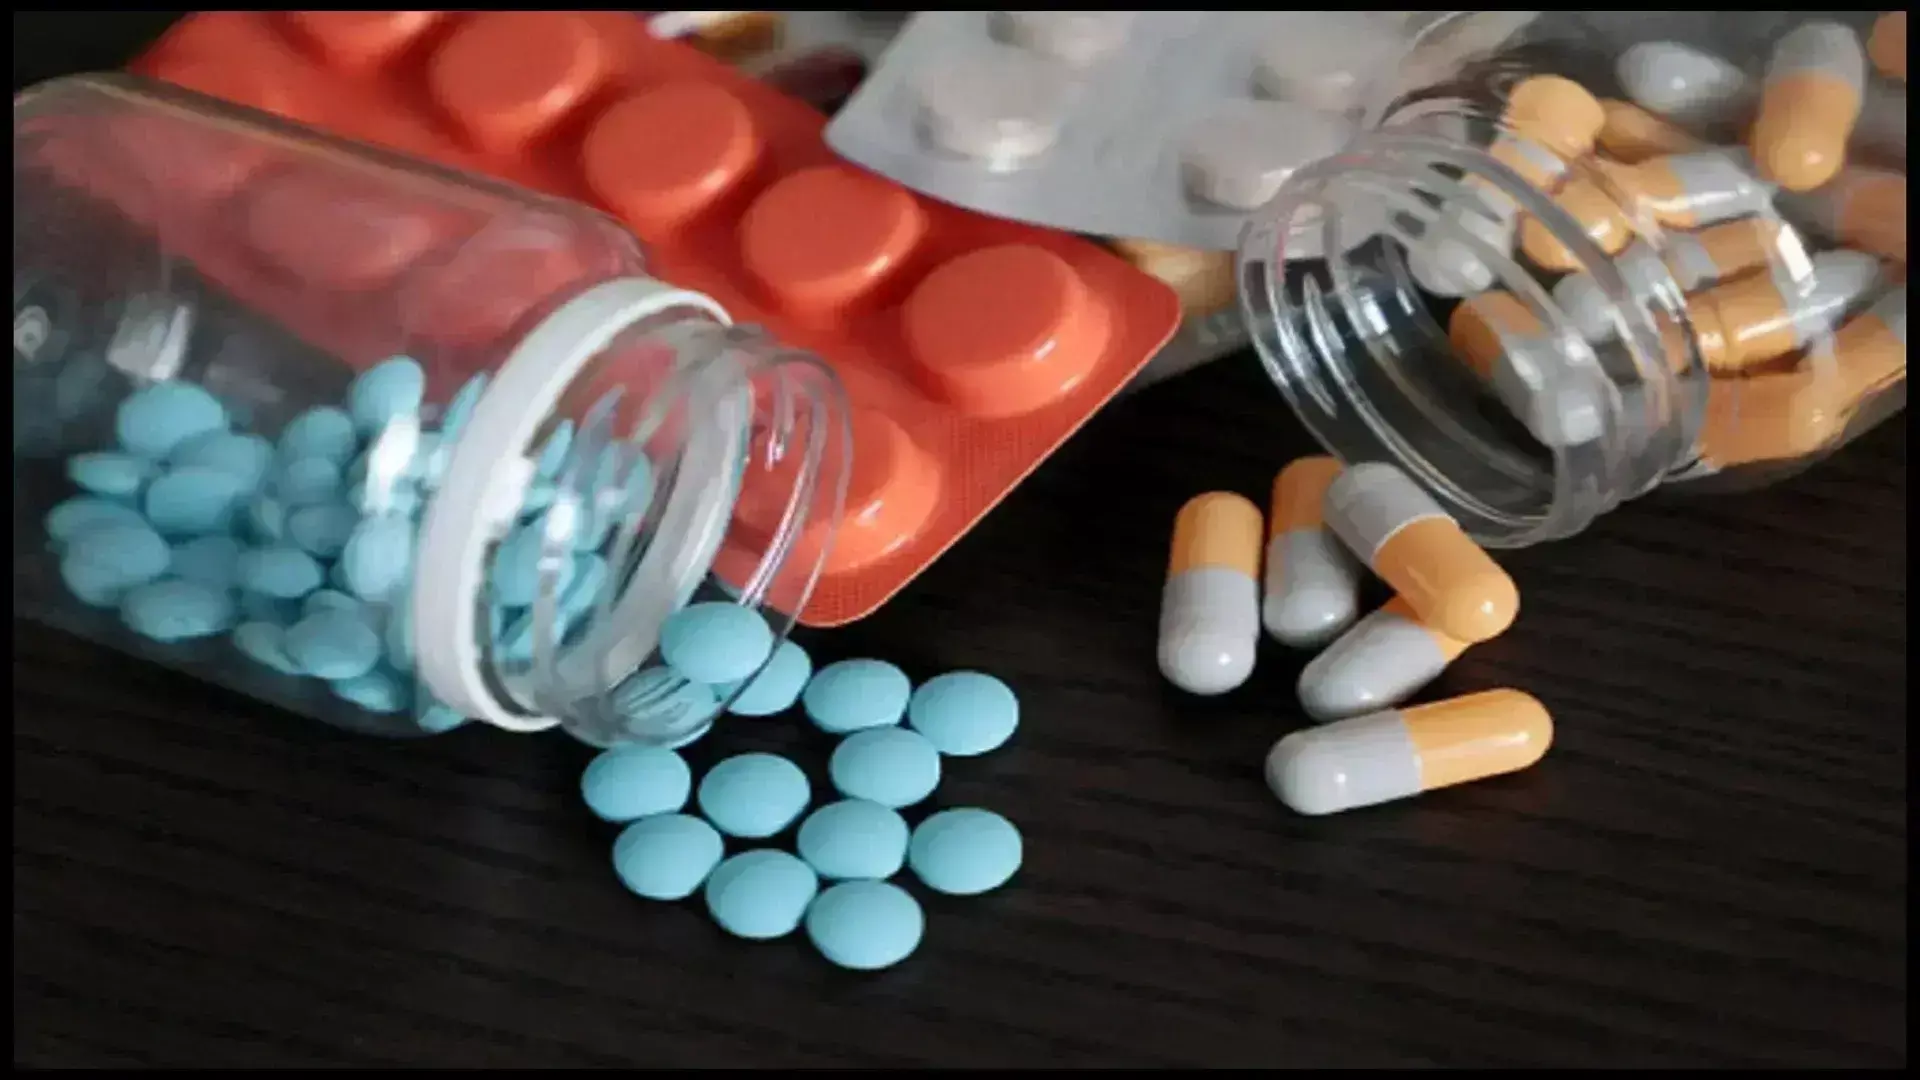 उत्तर प्रदेश में सिस्टोन सीरप समेत 32 आयुर्वेदिक दवाओं की बिक्री पर रोक